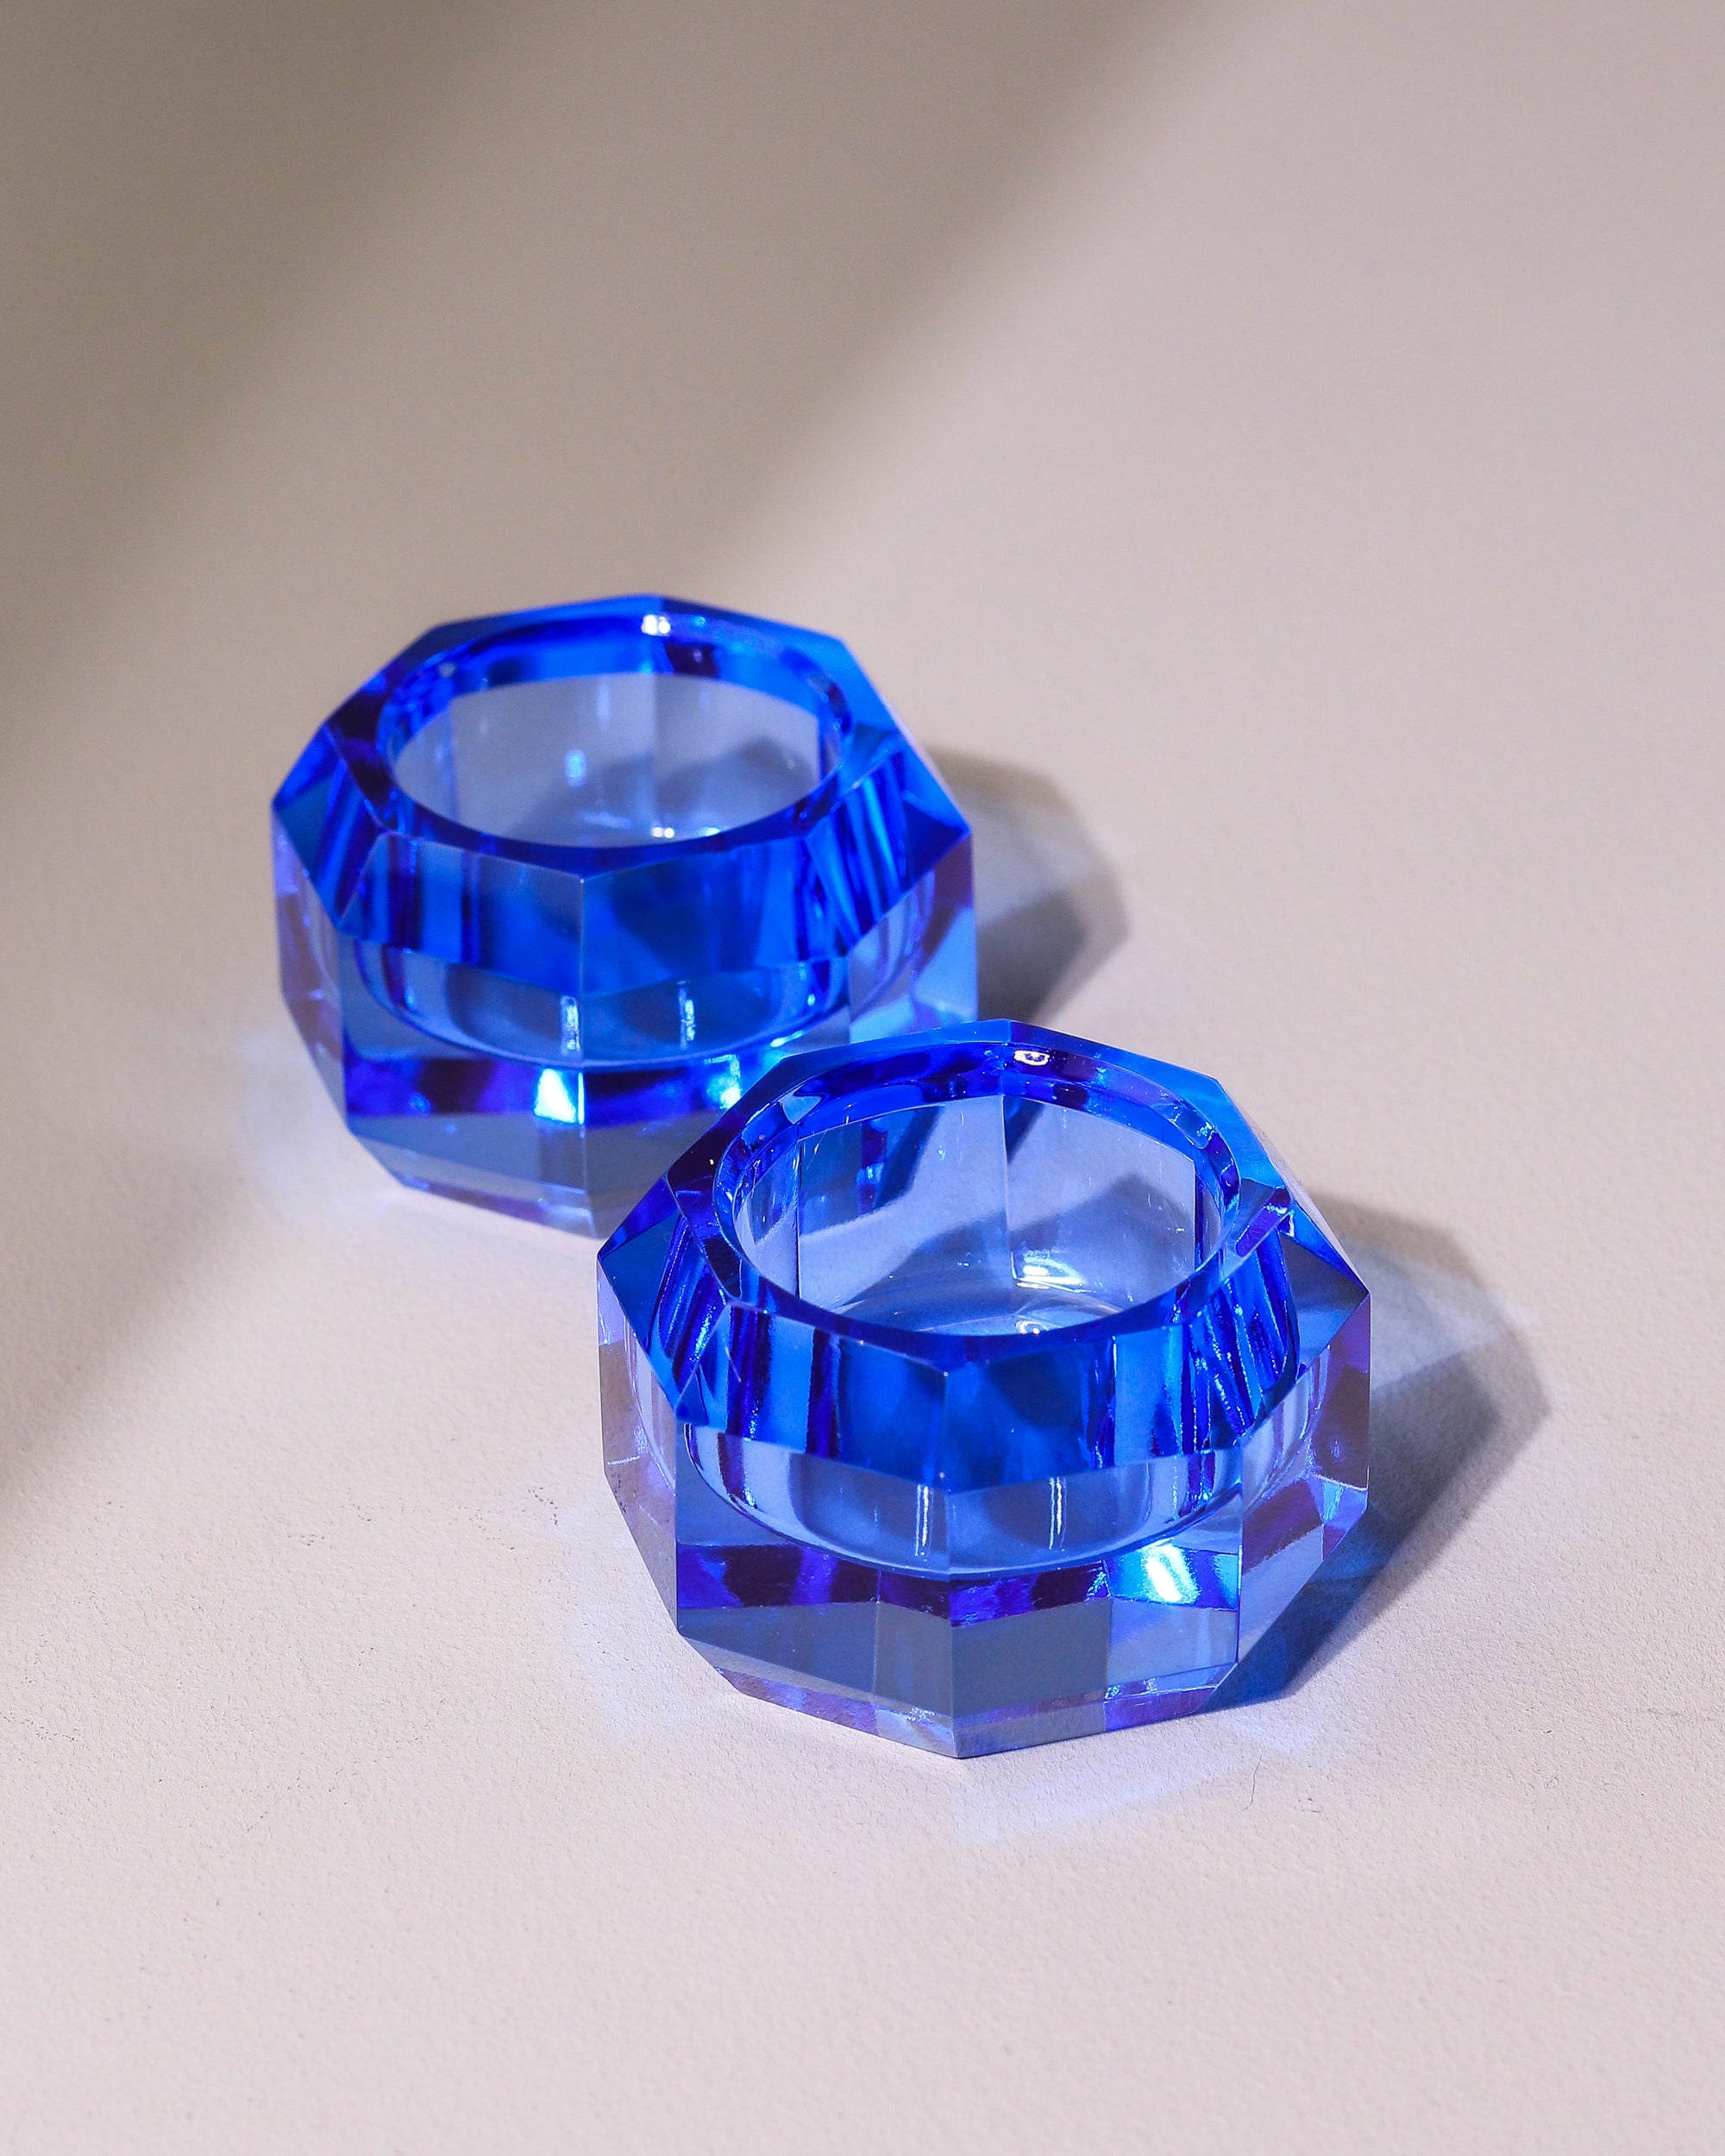 kleiner Teelichthalter aus Kristallglas